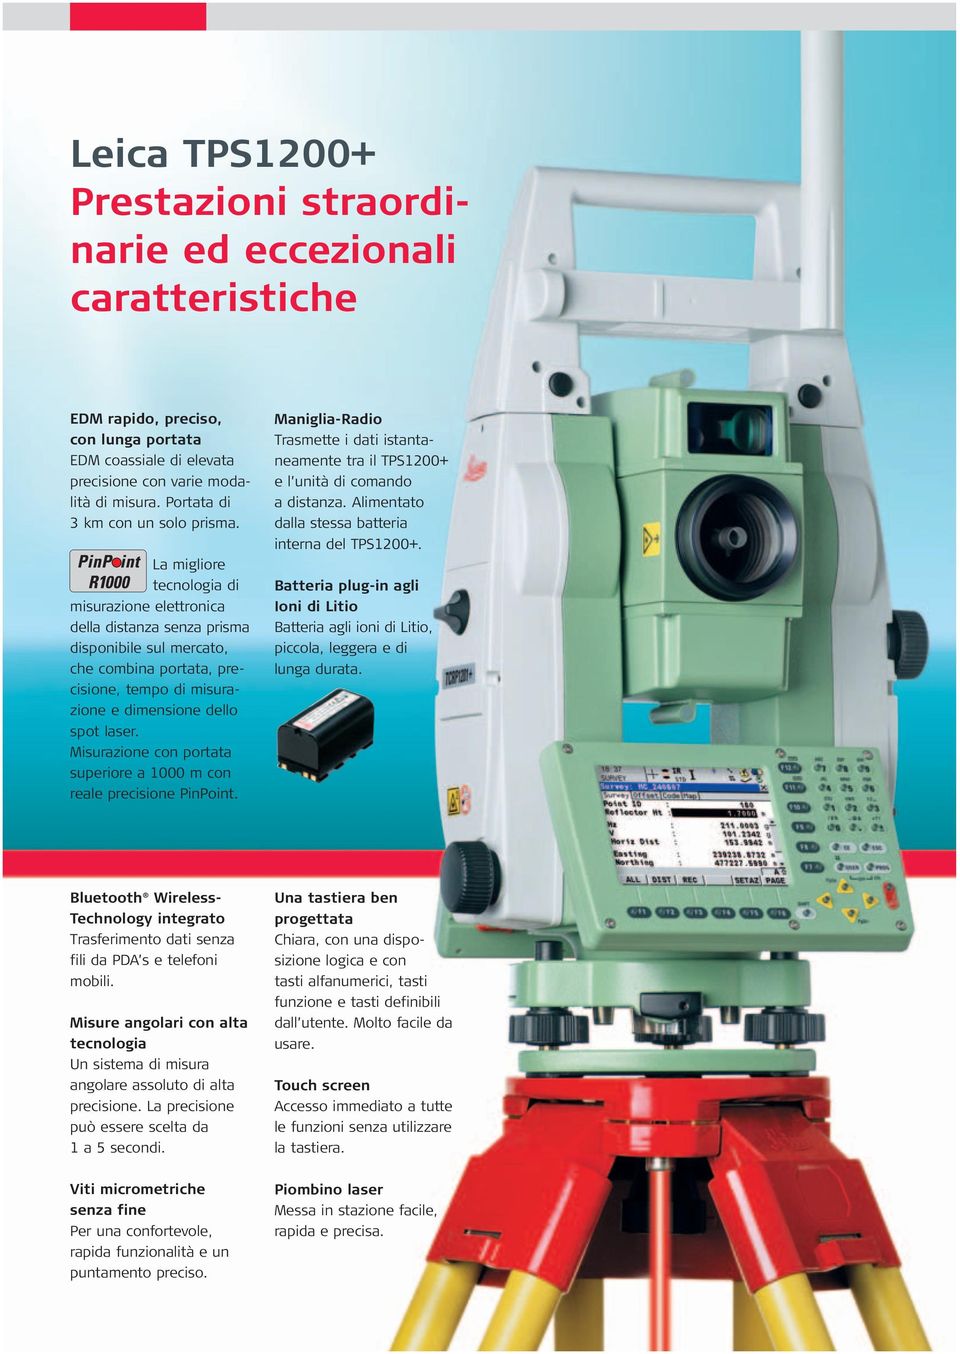 La migliore tecnologia di misurazione elettronica della distanza senza prisma disponibile sul mercato, che combina portata, precisione, tempo di misurazione e dimensione dello spot laser.